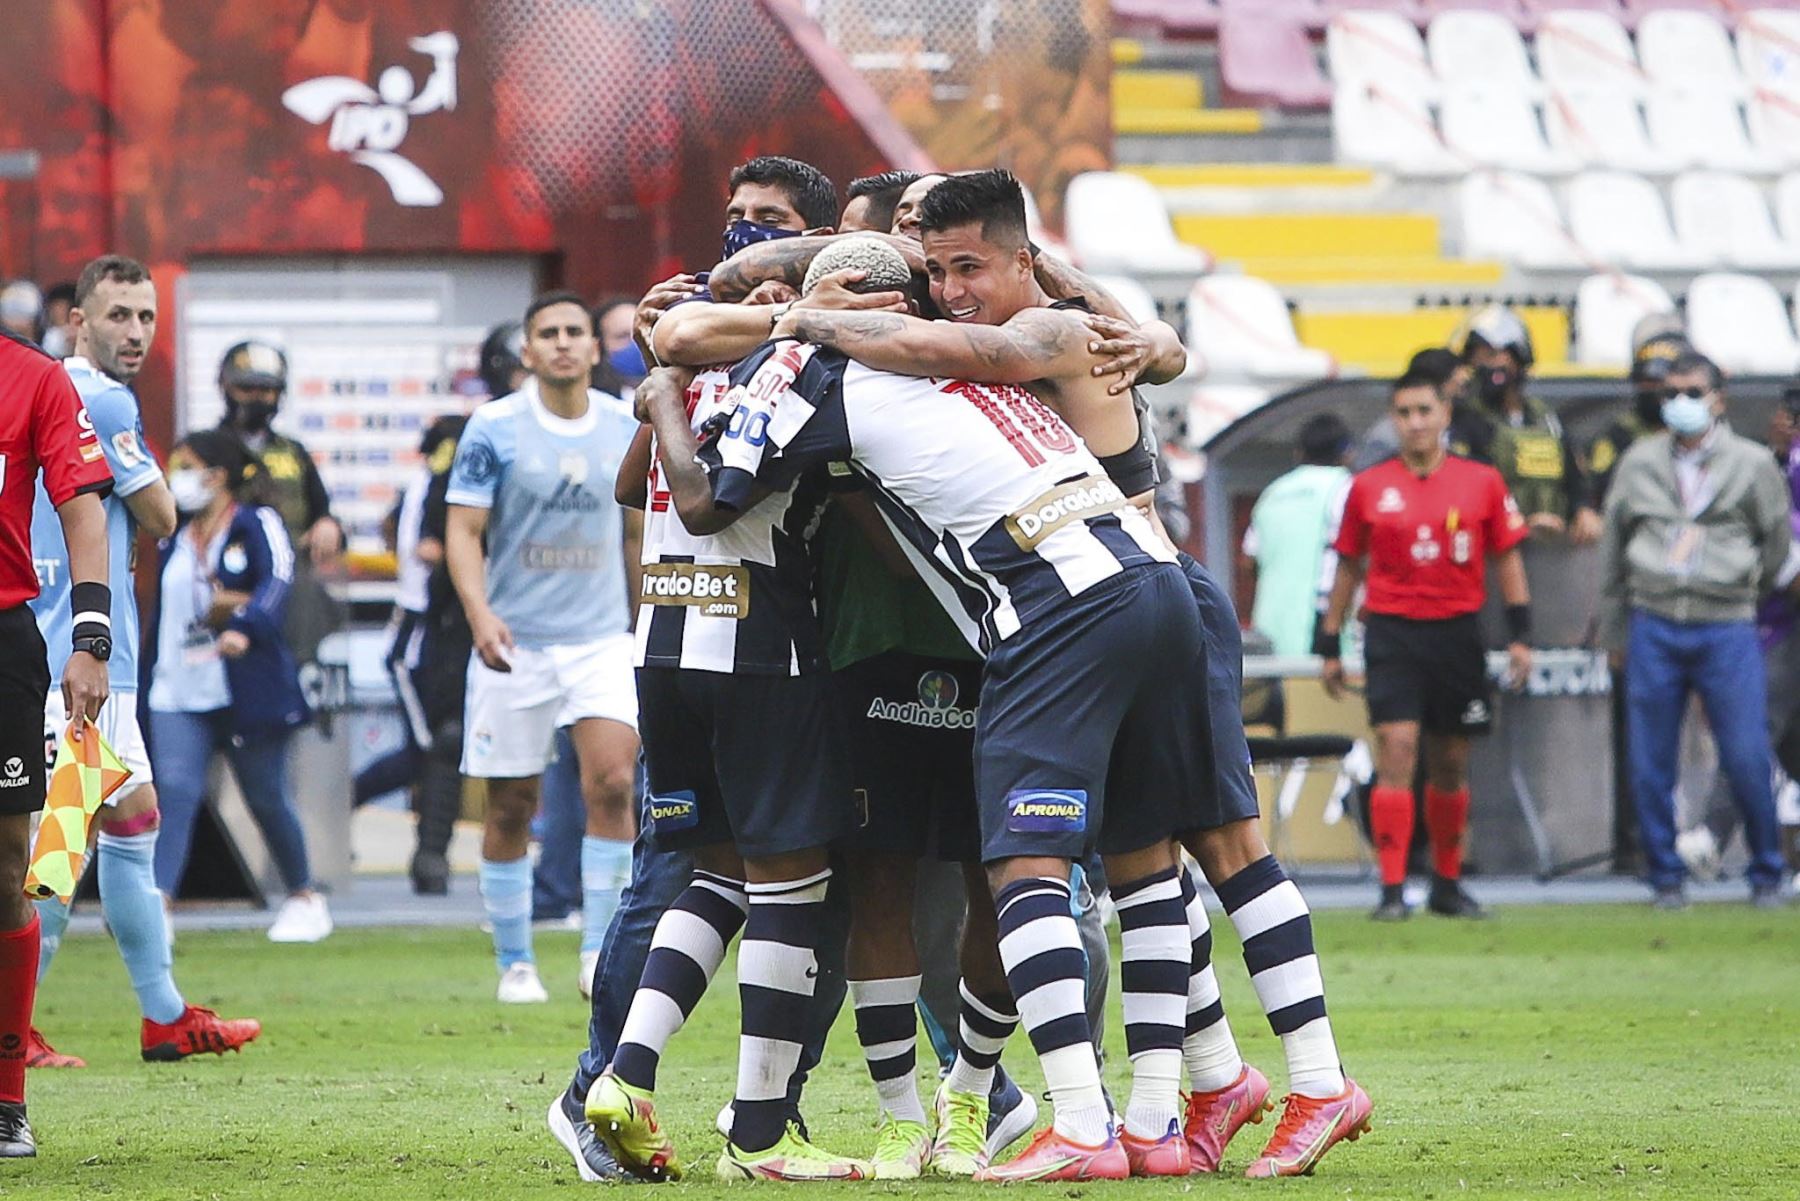 Alianza Lima se consagró campeón de la Liga 1, tras empatar sin goles ante Sporting Cristal a quienes habían derrotado 1-0 en el partido de ida. Ambos encuentros se disputaron en el Estadio Nacional. Foto: FPF